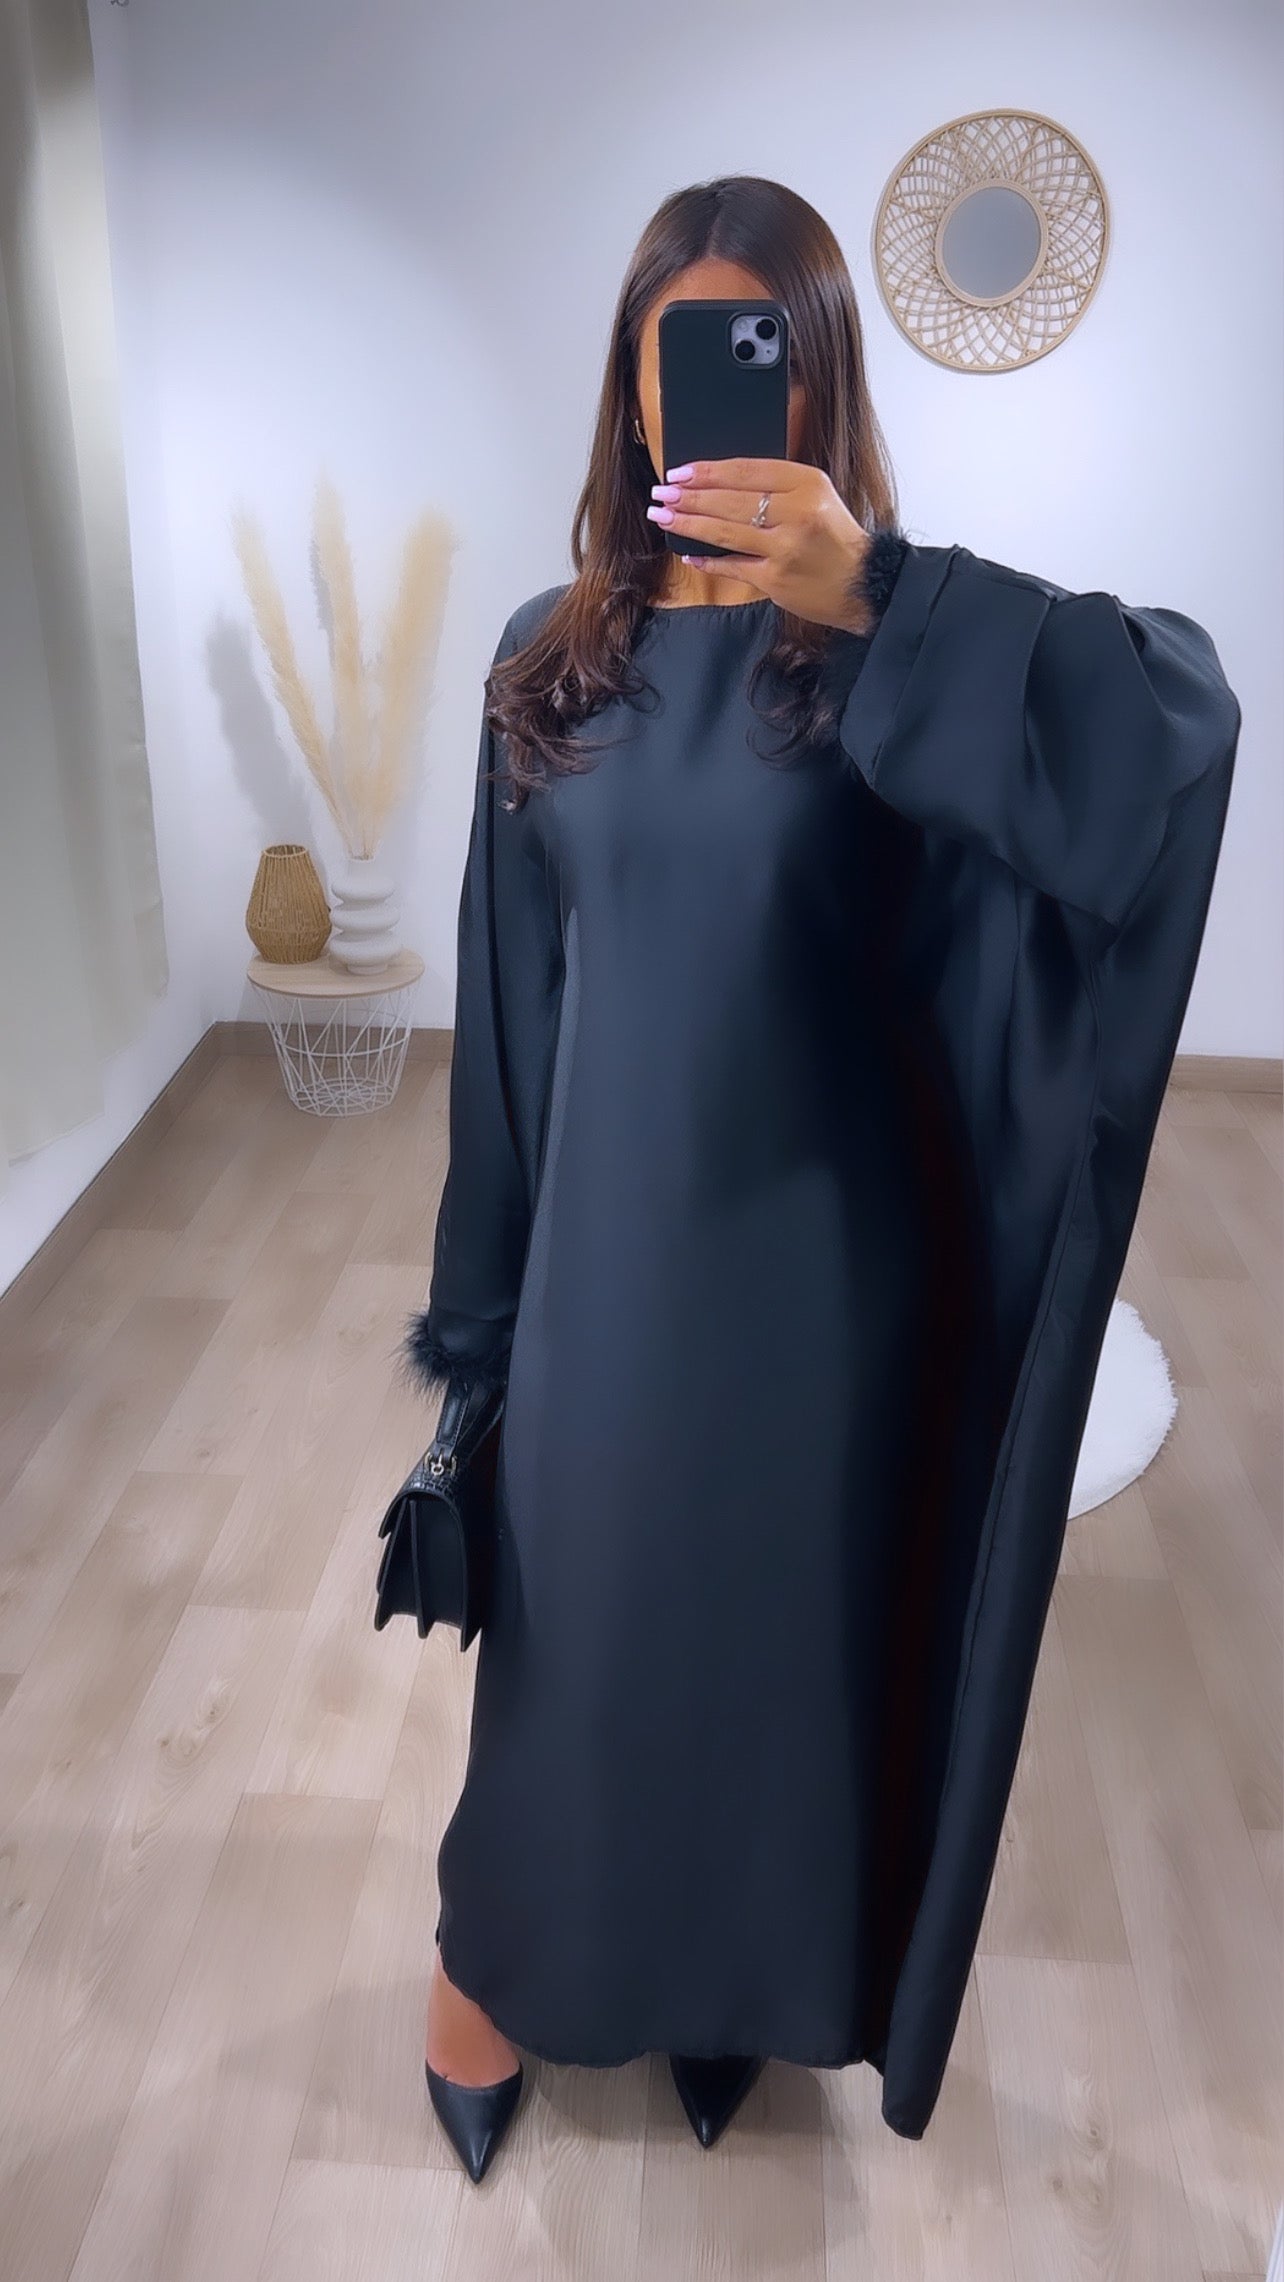 Robe noir avec détail plume